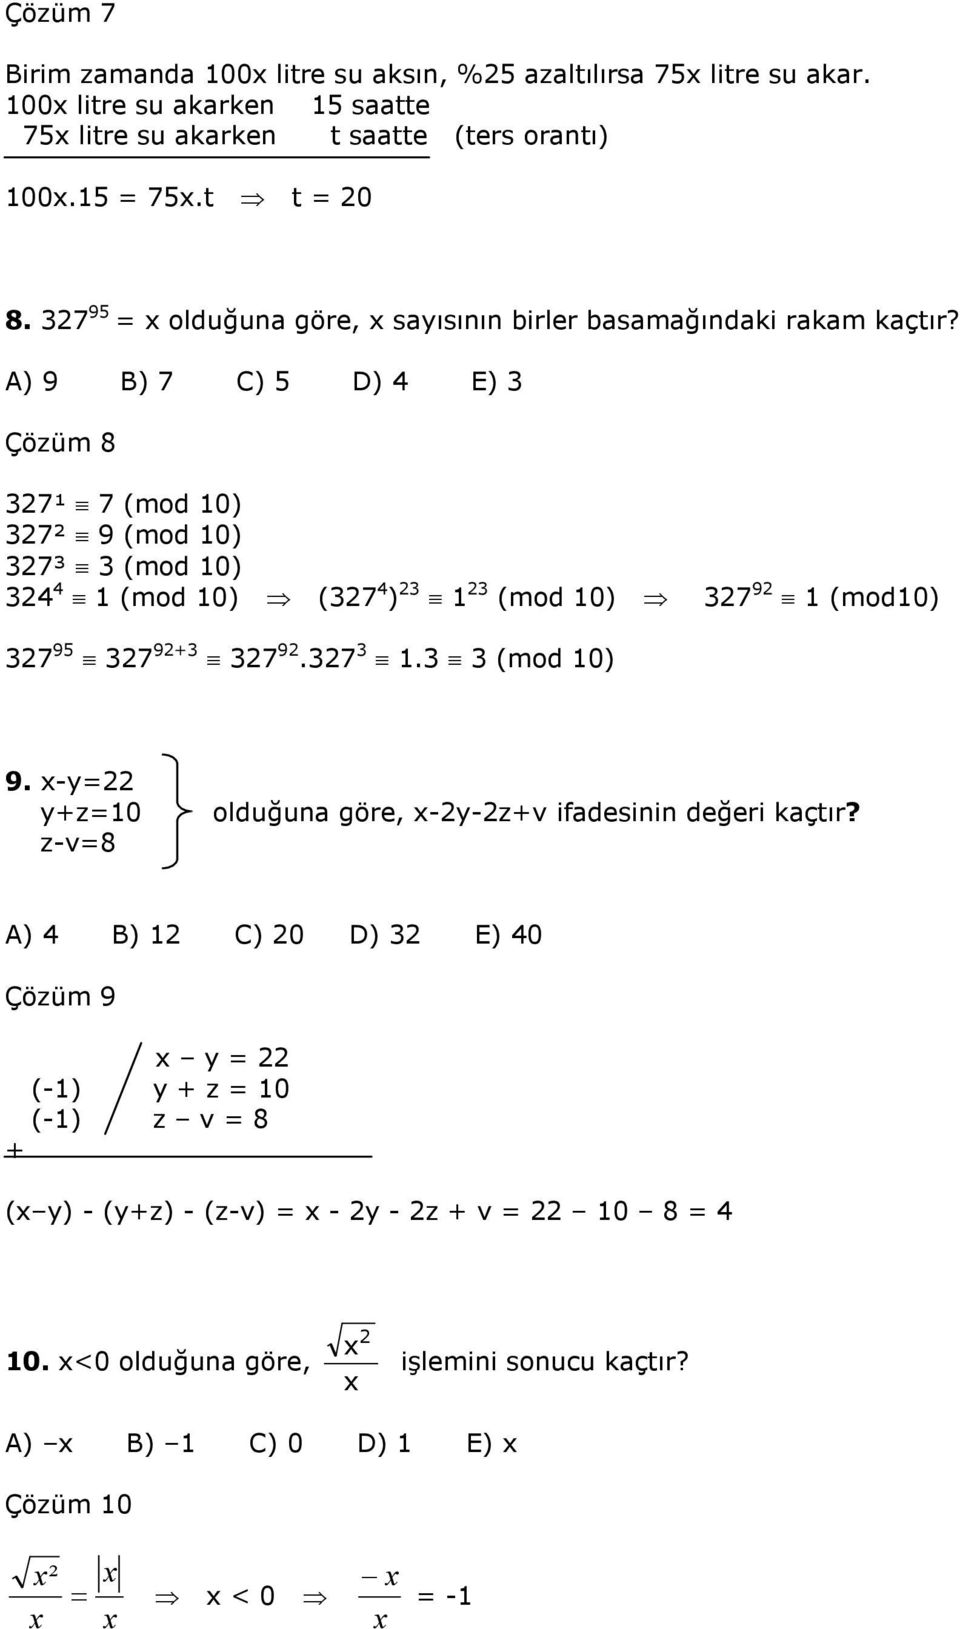 A) 9 B) 7 C) D) E) Çözüm 8 7¹ 7 (mod 0) 7² 9 (mod 0) 7³ (mod 0) (mod 0) (7 ) (mod 0) 7 9 (mod0) 7 9 7 9+ 7 9.7. (mod 0) 9.